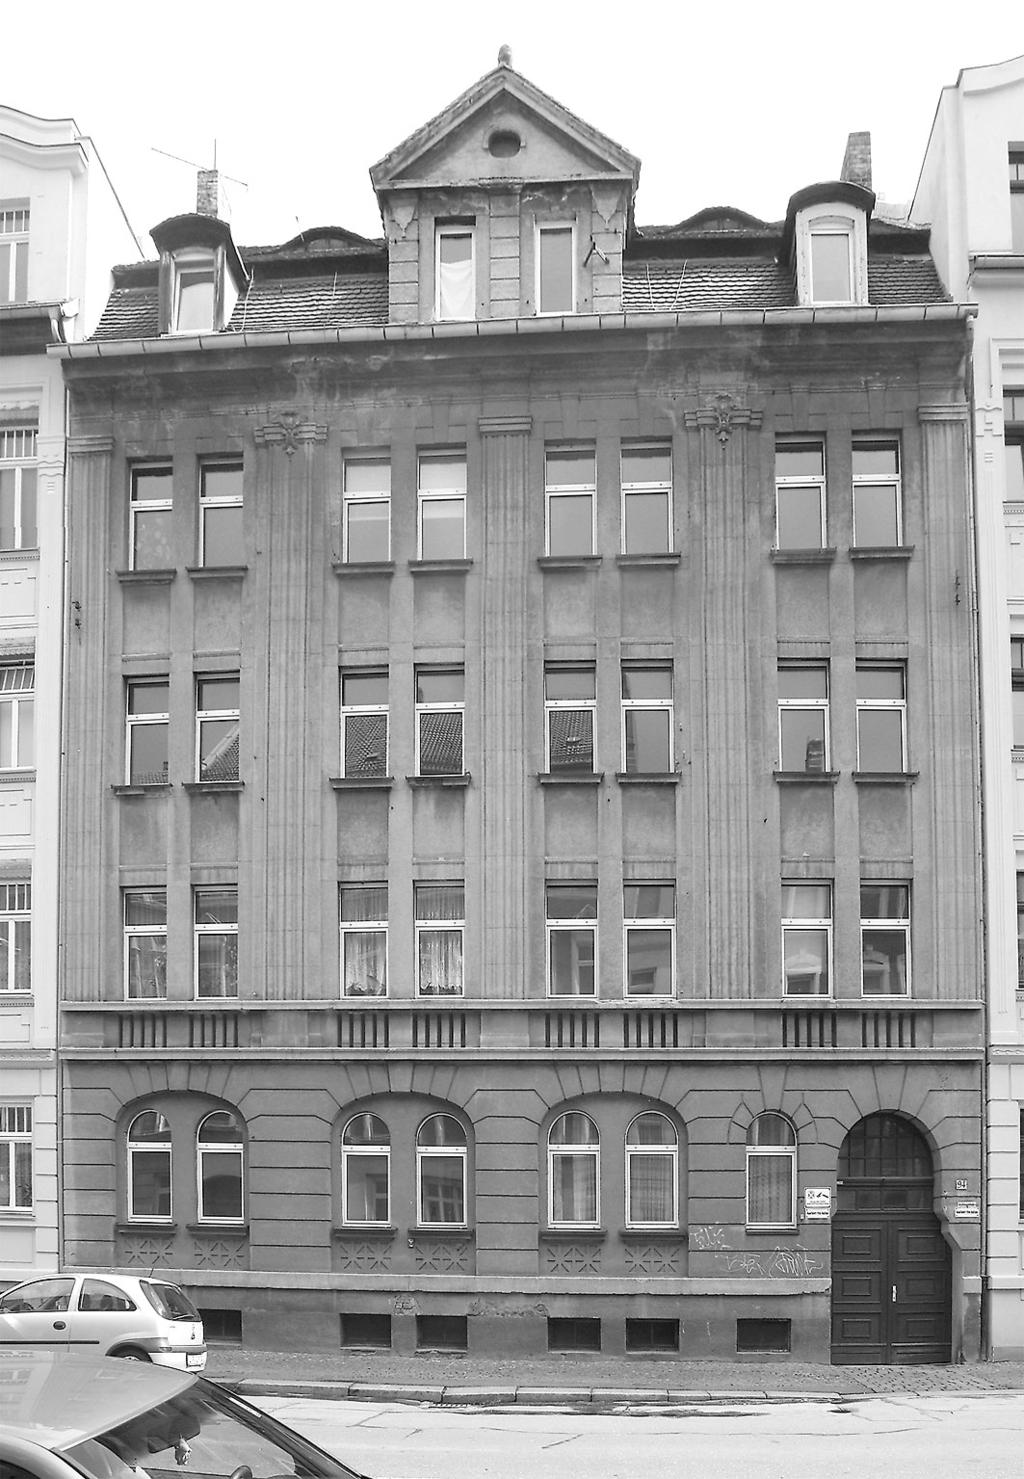 OBJEKTBESCHREIBUNG Bei der Liegenschaft handelt es sich um ein ca. 1913 errichtetes Wohnhaus mit einem ehemals gewerblich genutzten Hintergebäude.